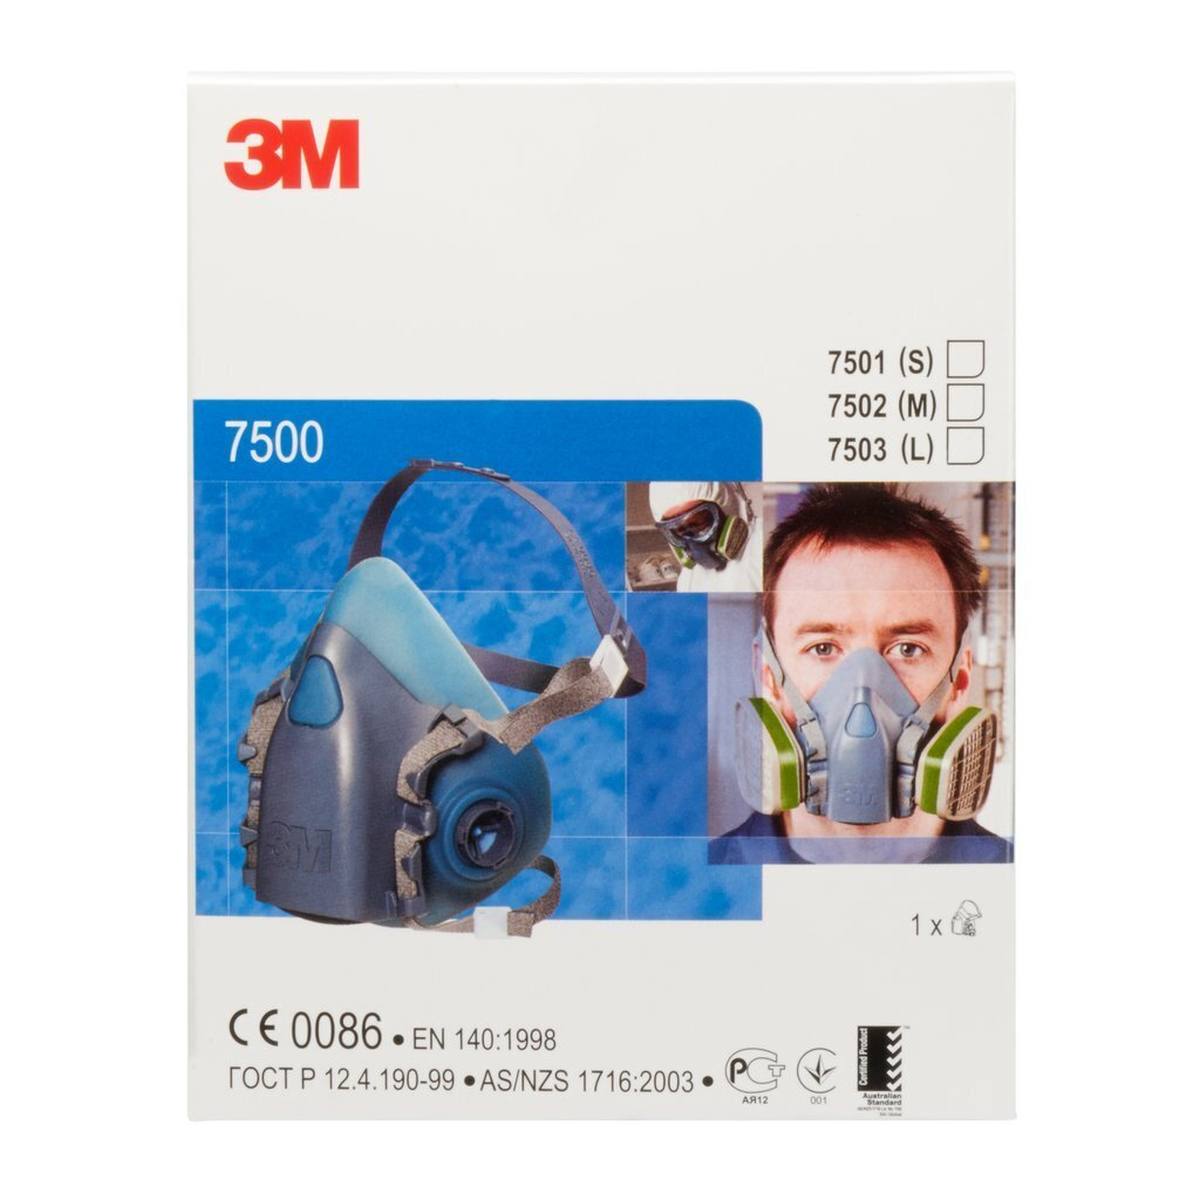 3M 7503L Media máscara cuerpo silicona / poliéster termoplástico talla L